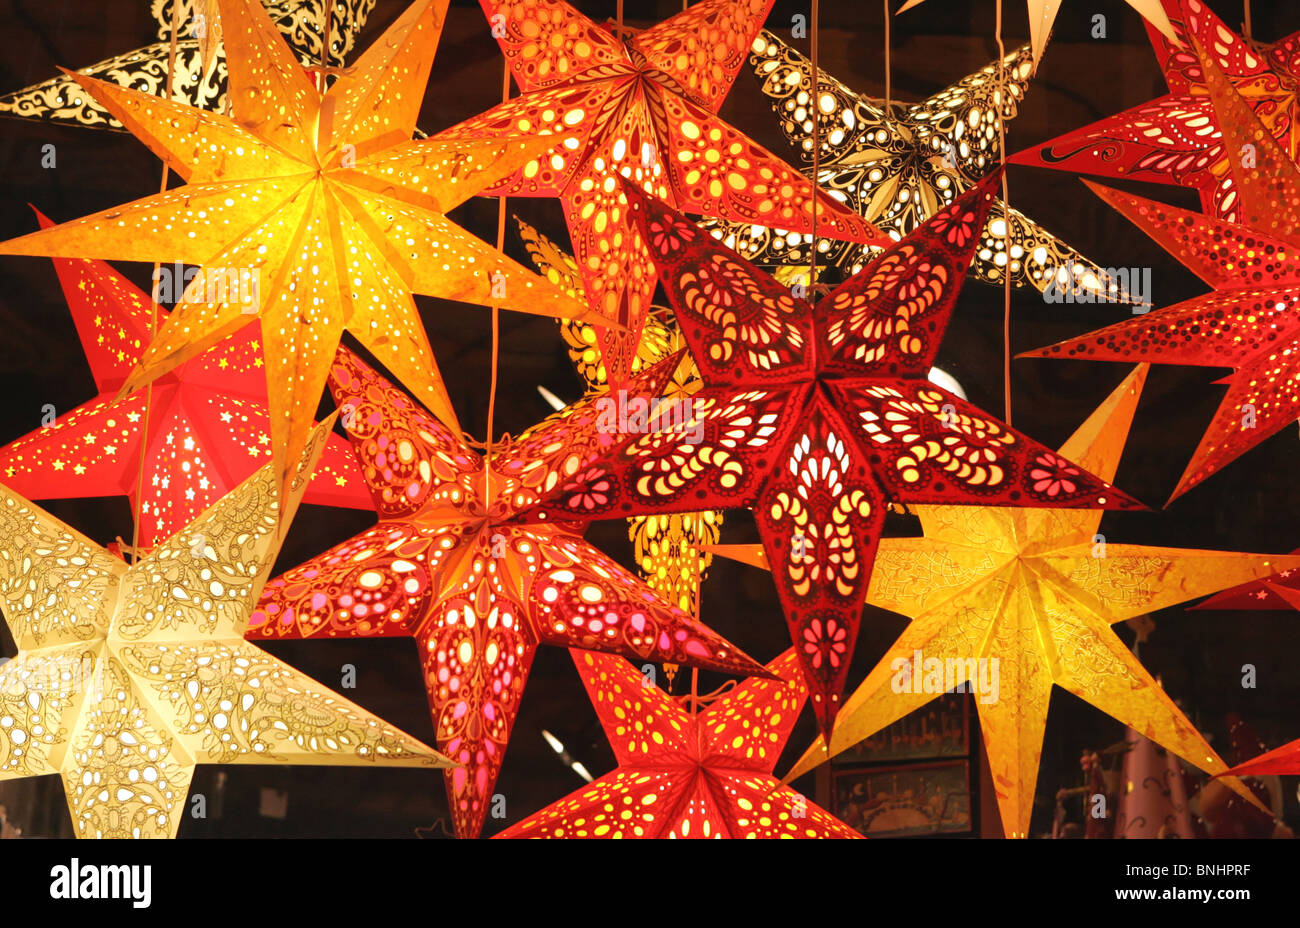 Weihnachten Lampen Papierlaternen Licht Beleuchtung beleuchtete Dekoration Sterne  Sterne hängen Stockfotografie - Alamy